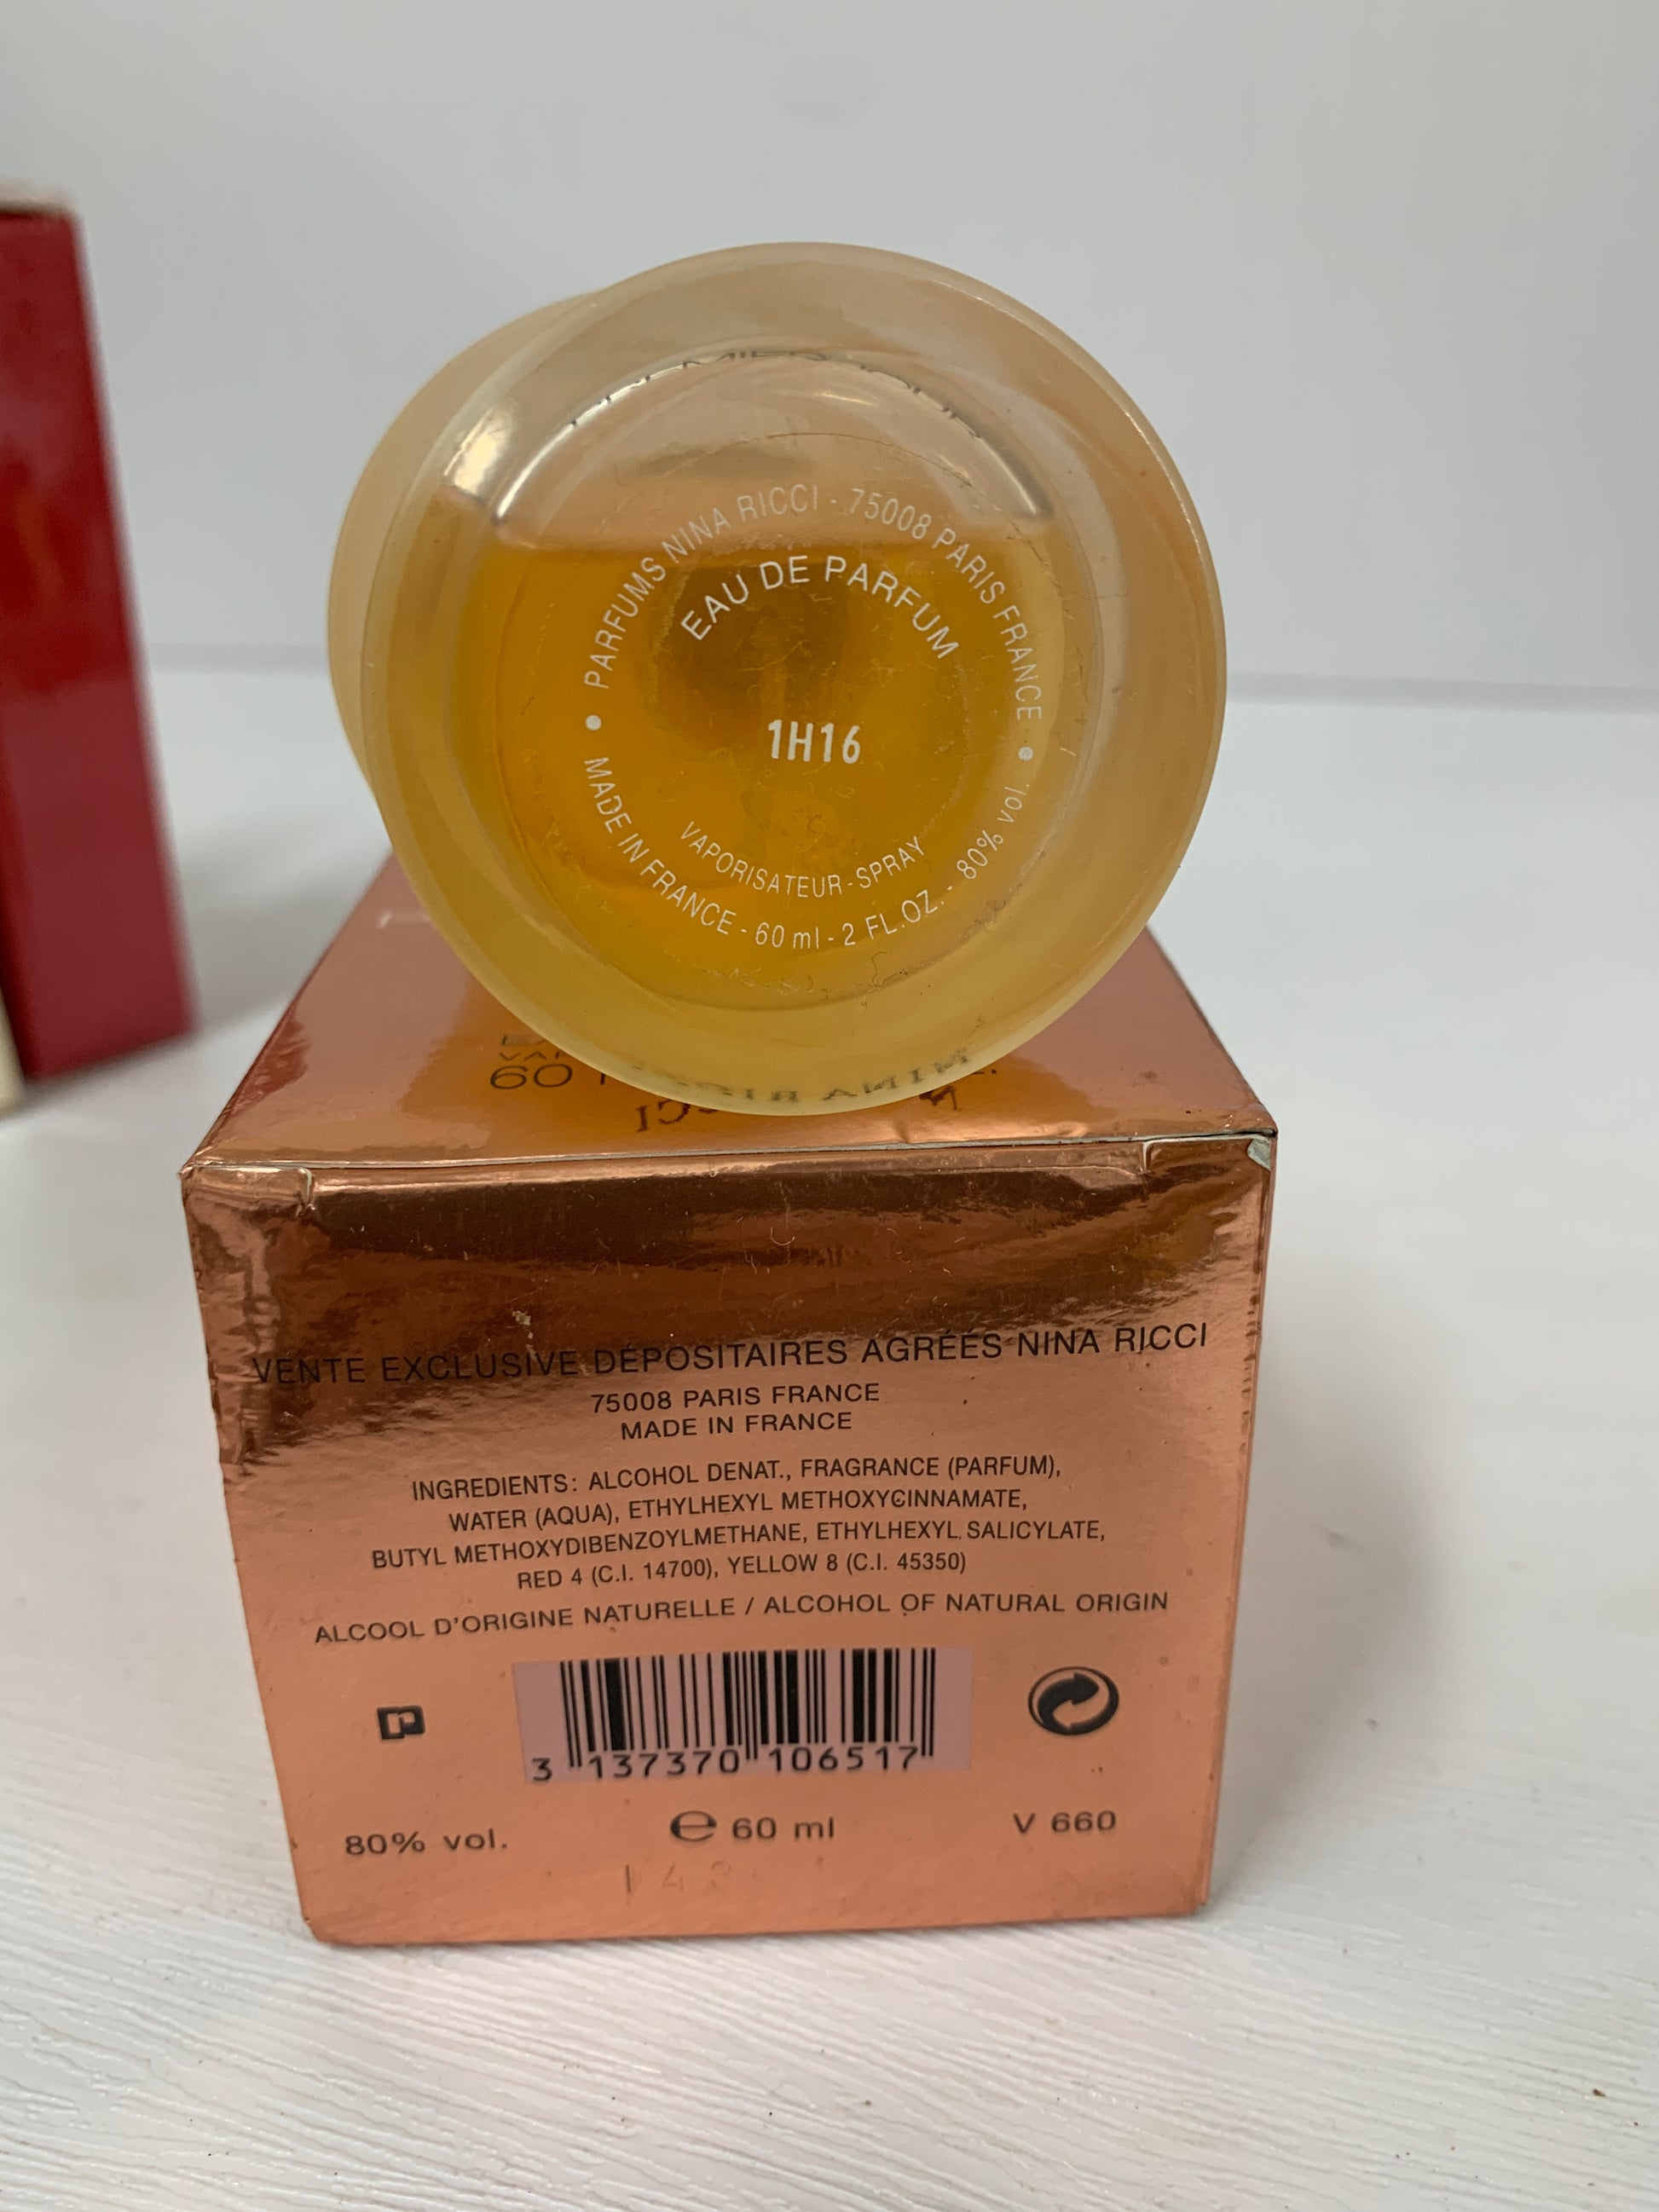 edp oz Ground – ricci premier jour de OCT21 Nina Trendy 2 parfum 60ml - eau